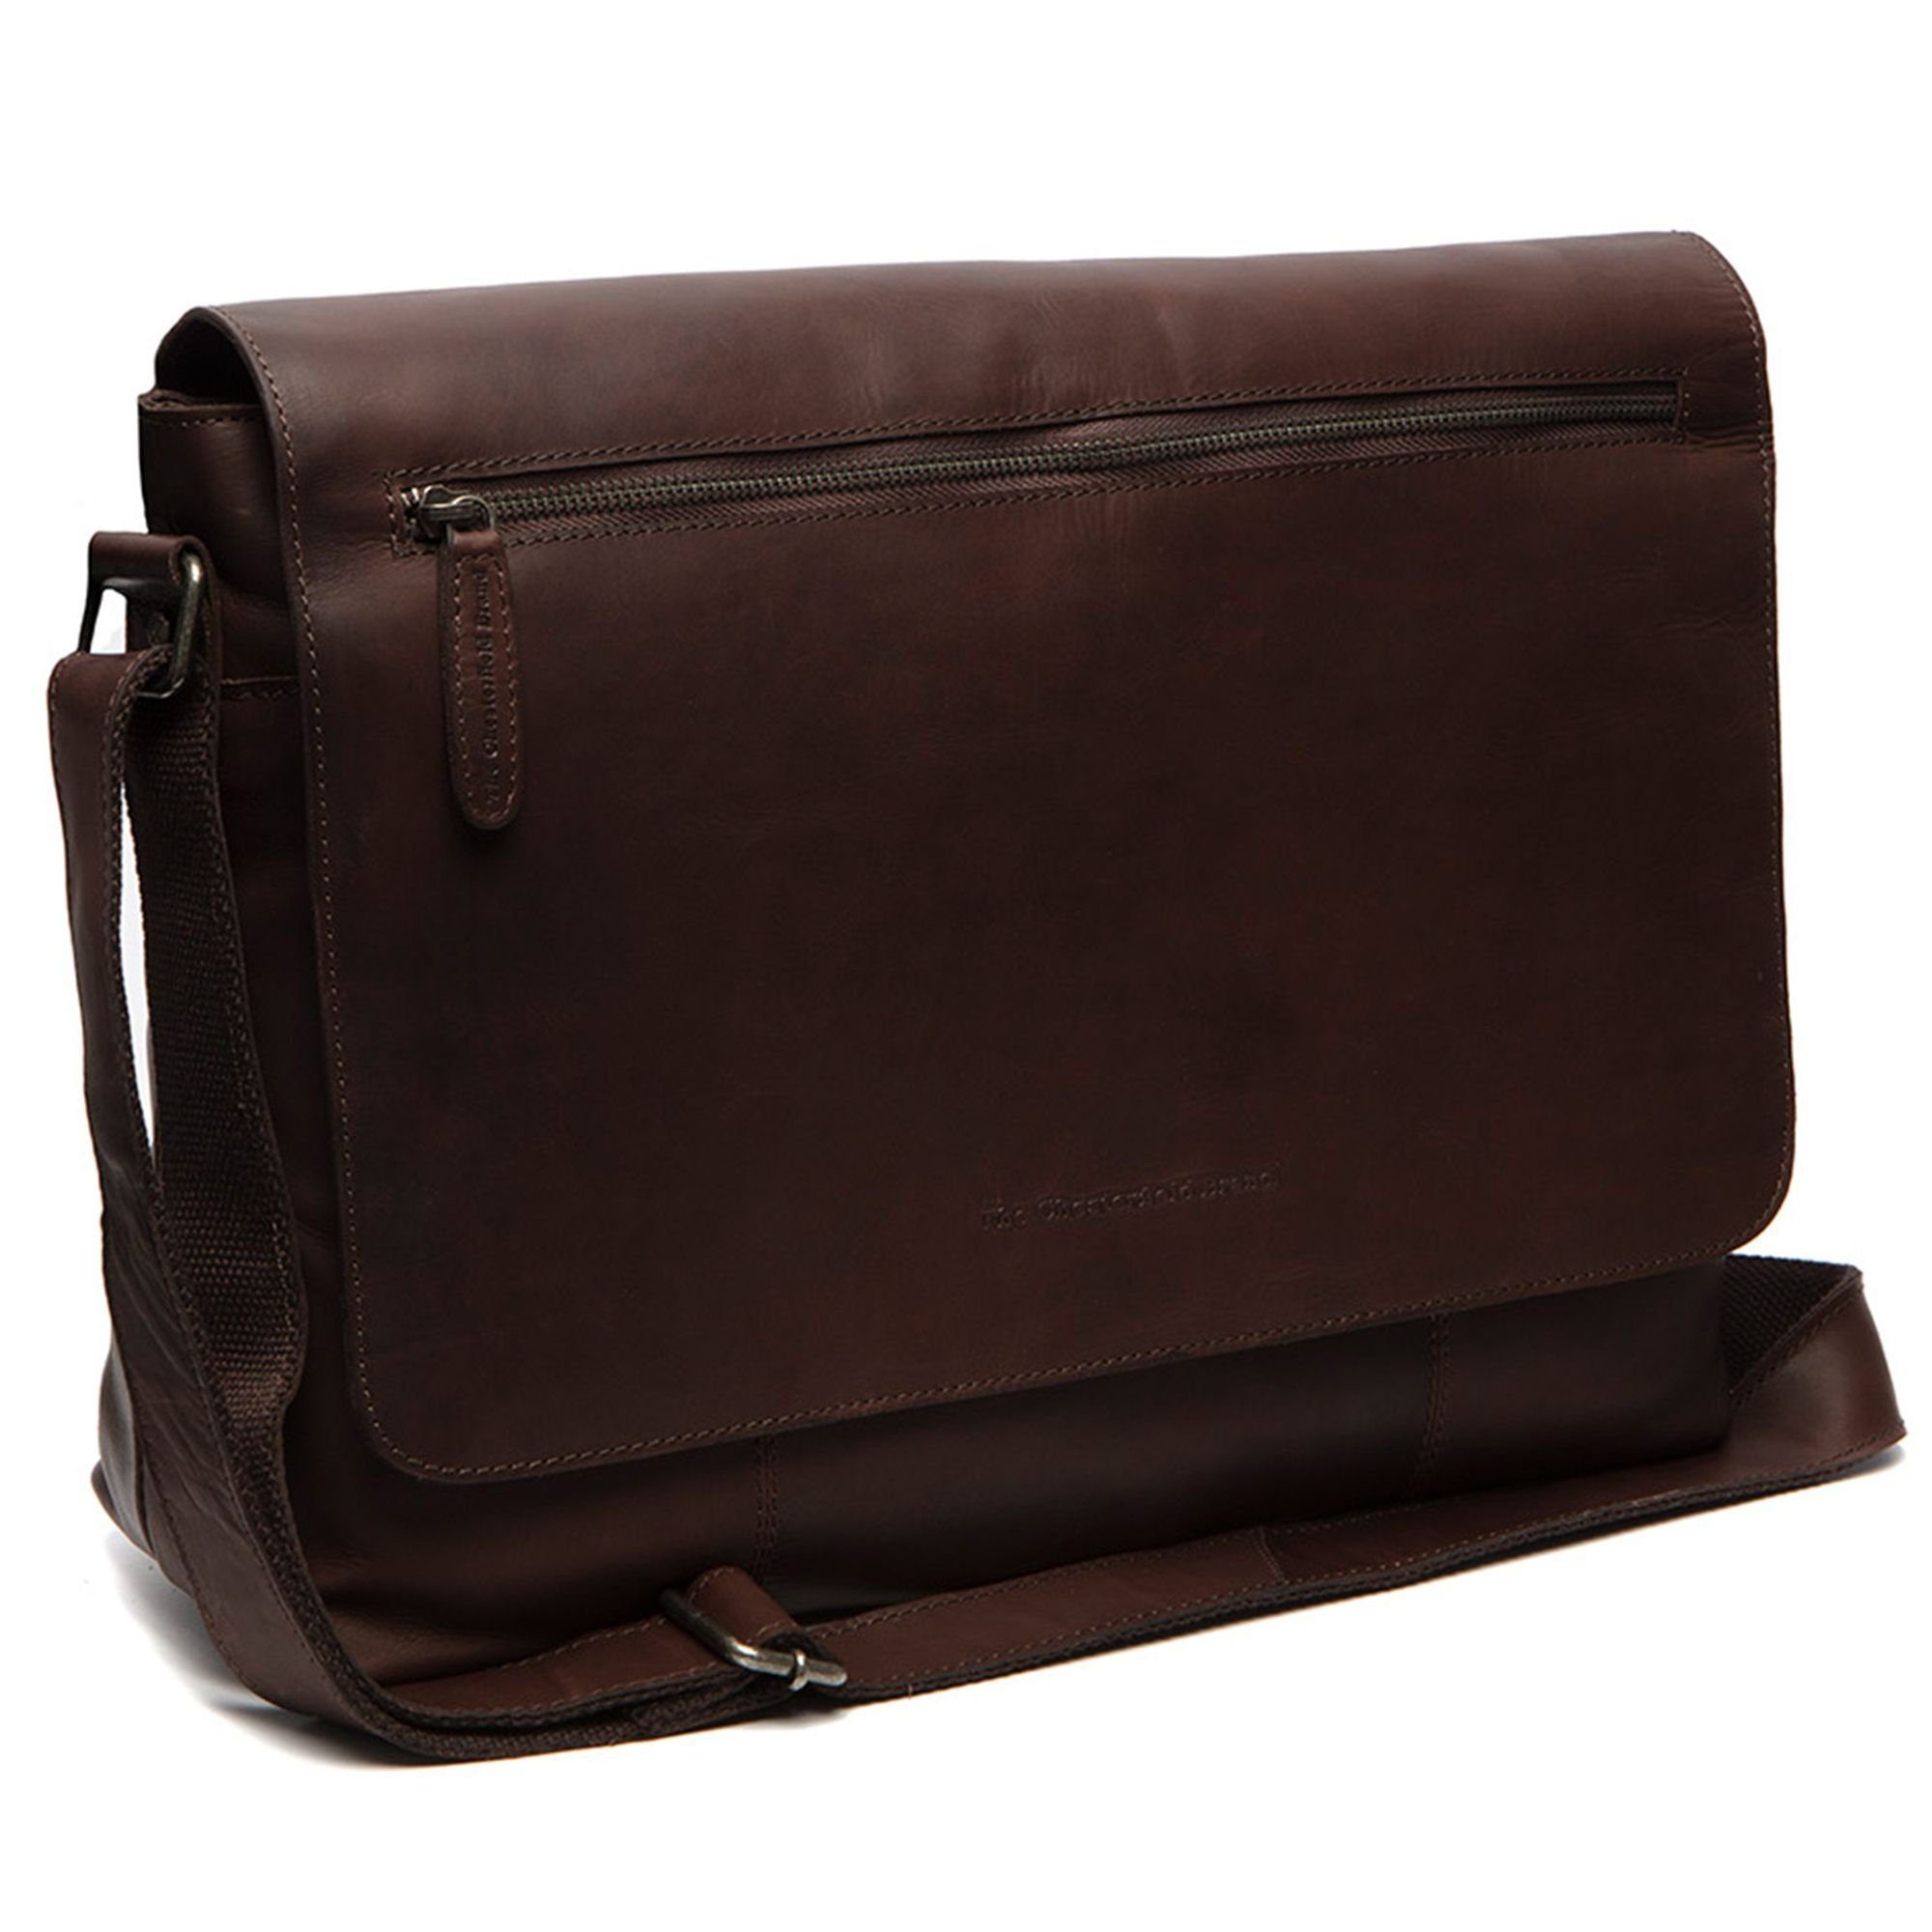 The Chesterfield Brand Messenger Bag Toledo, Leder brown